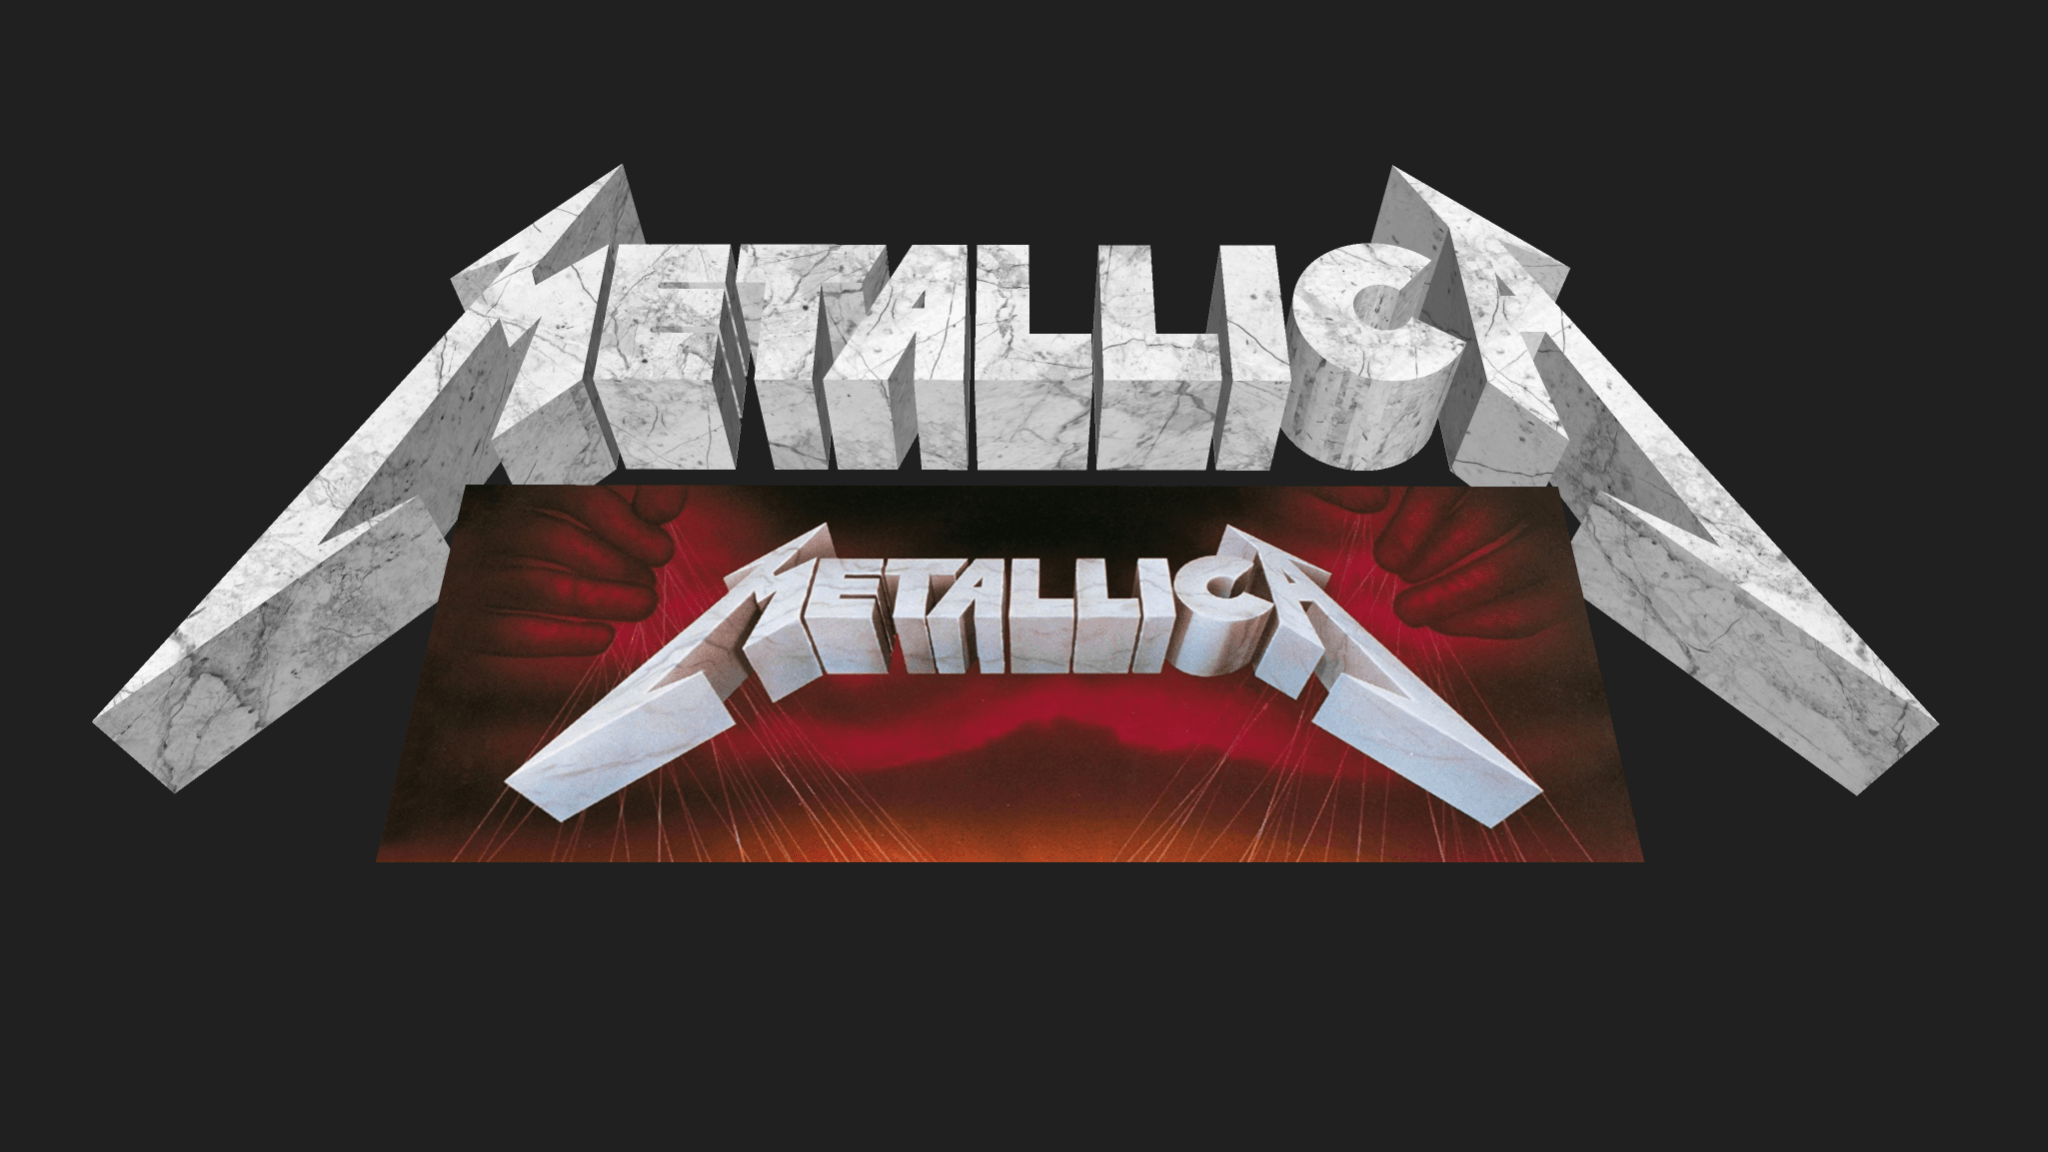 Meticalla Logo - Metallica Logo & Star Symbol